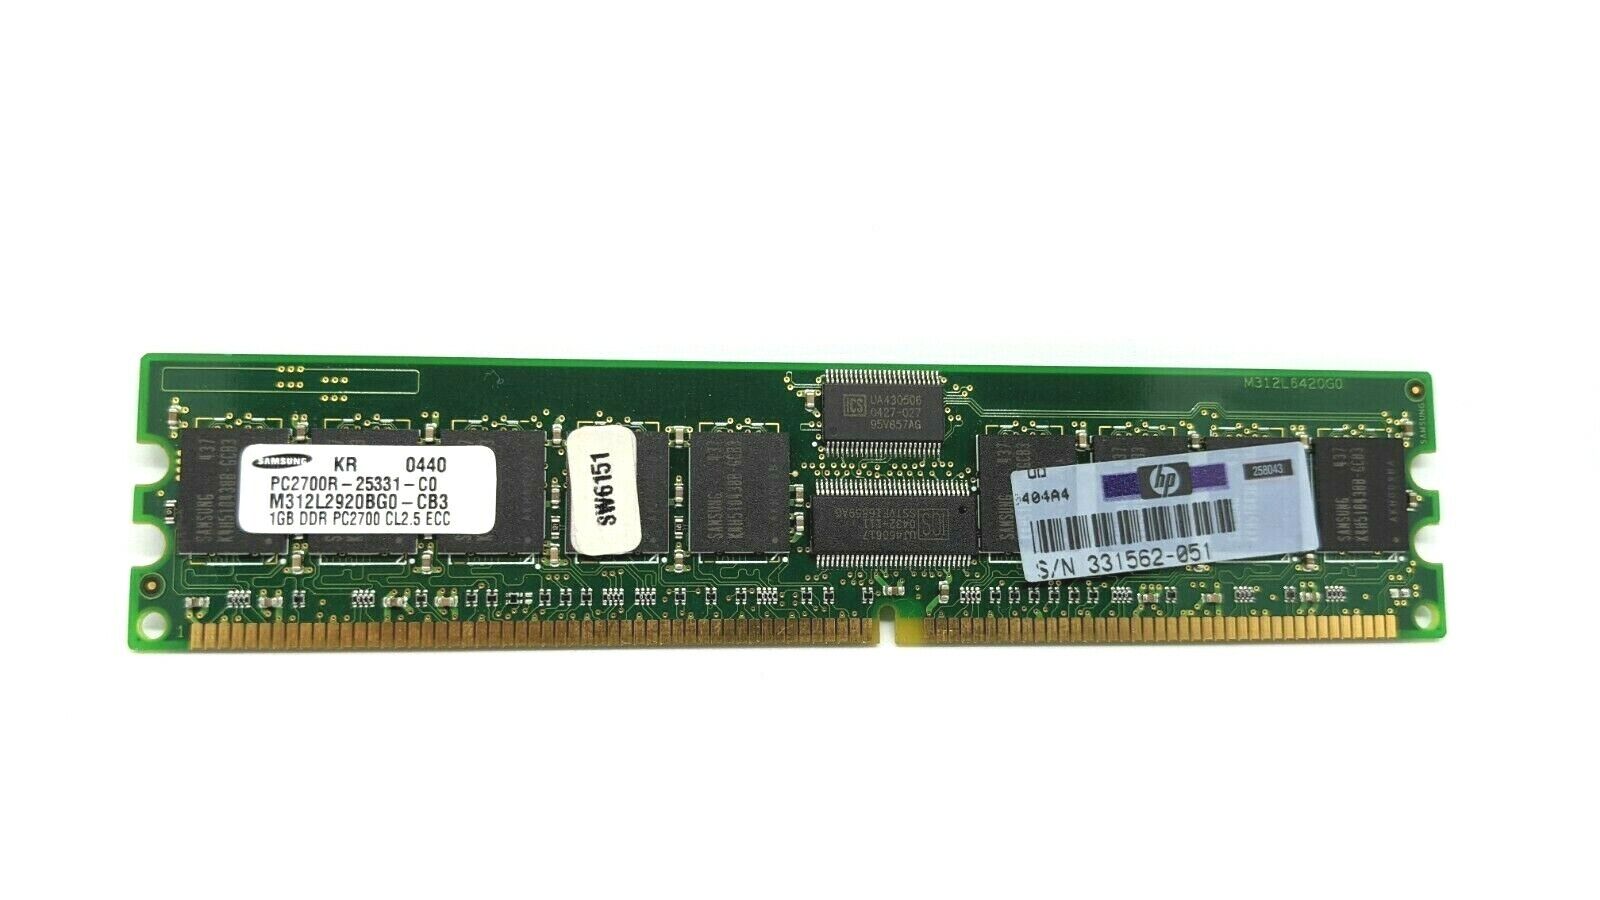 Samsung M312L2920BG0-CB3 1GB ECC Registered Memory RAM PC2700R-25331-C0